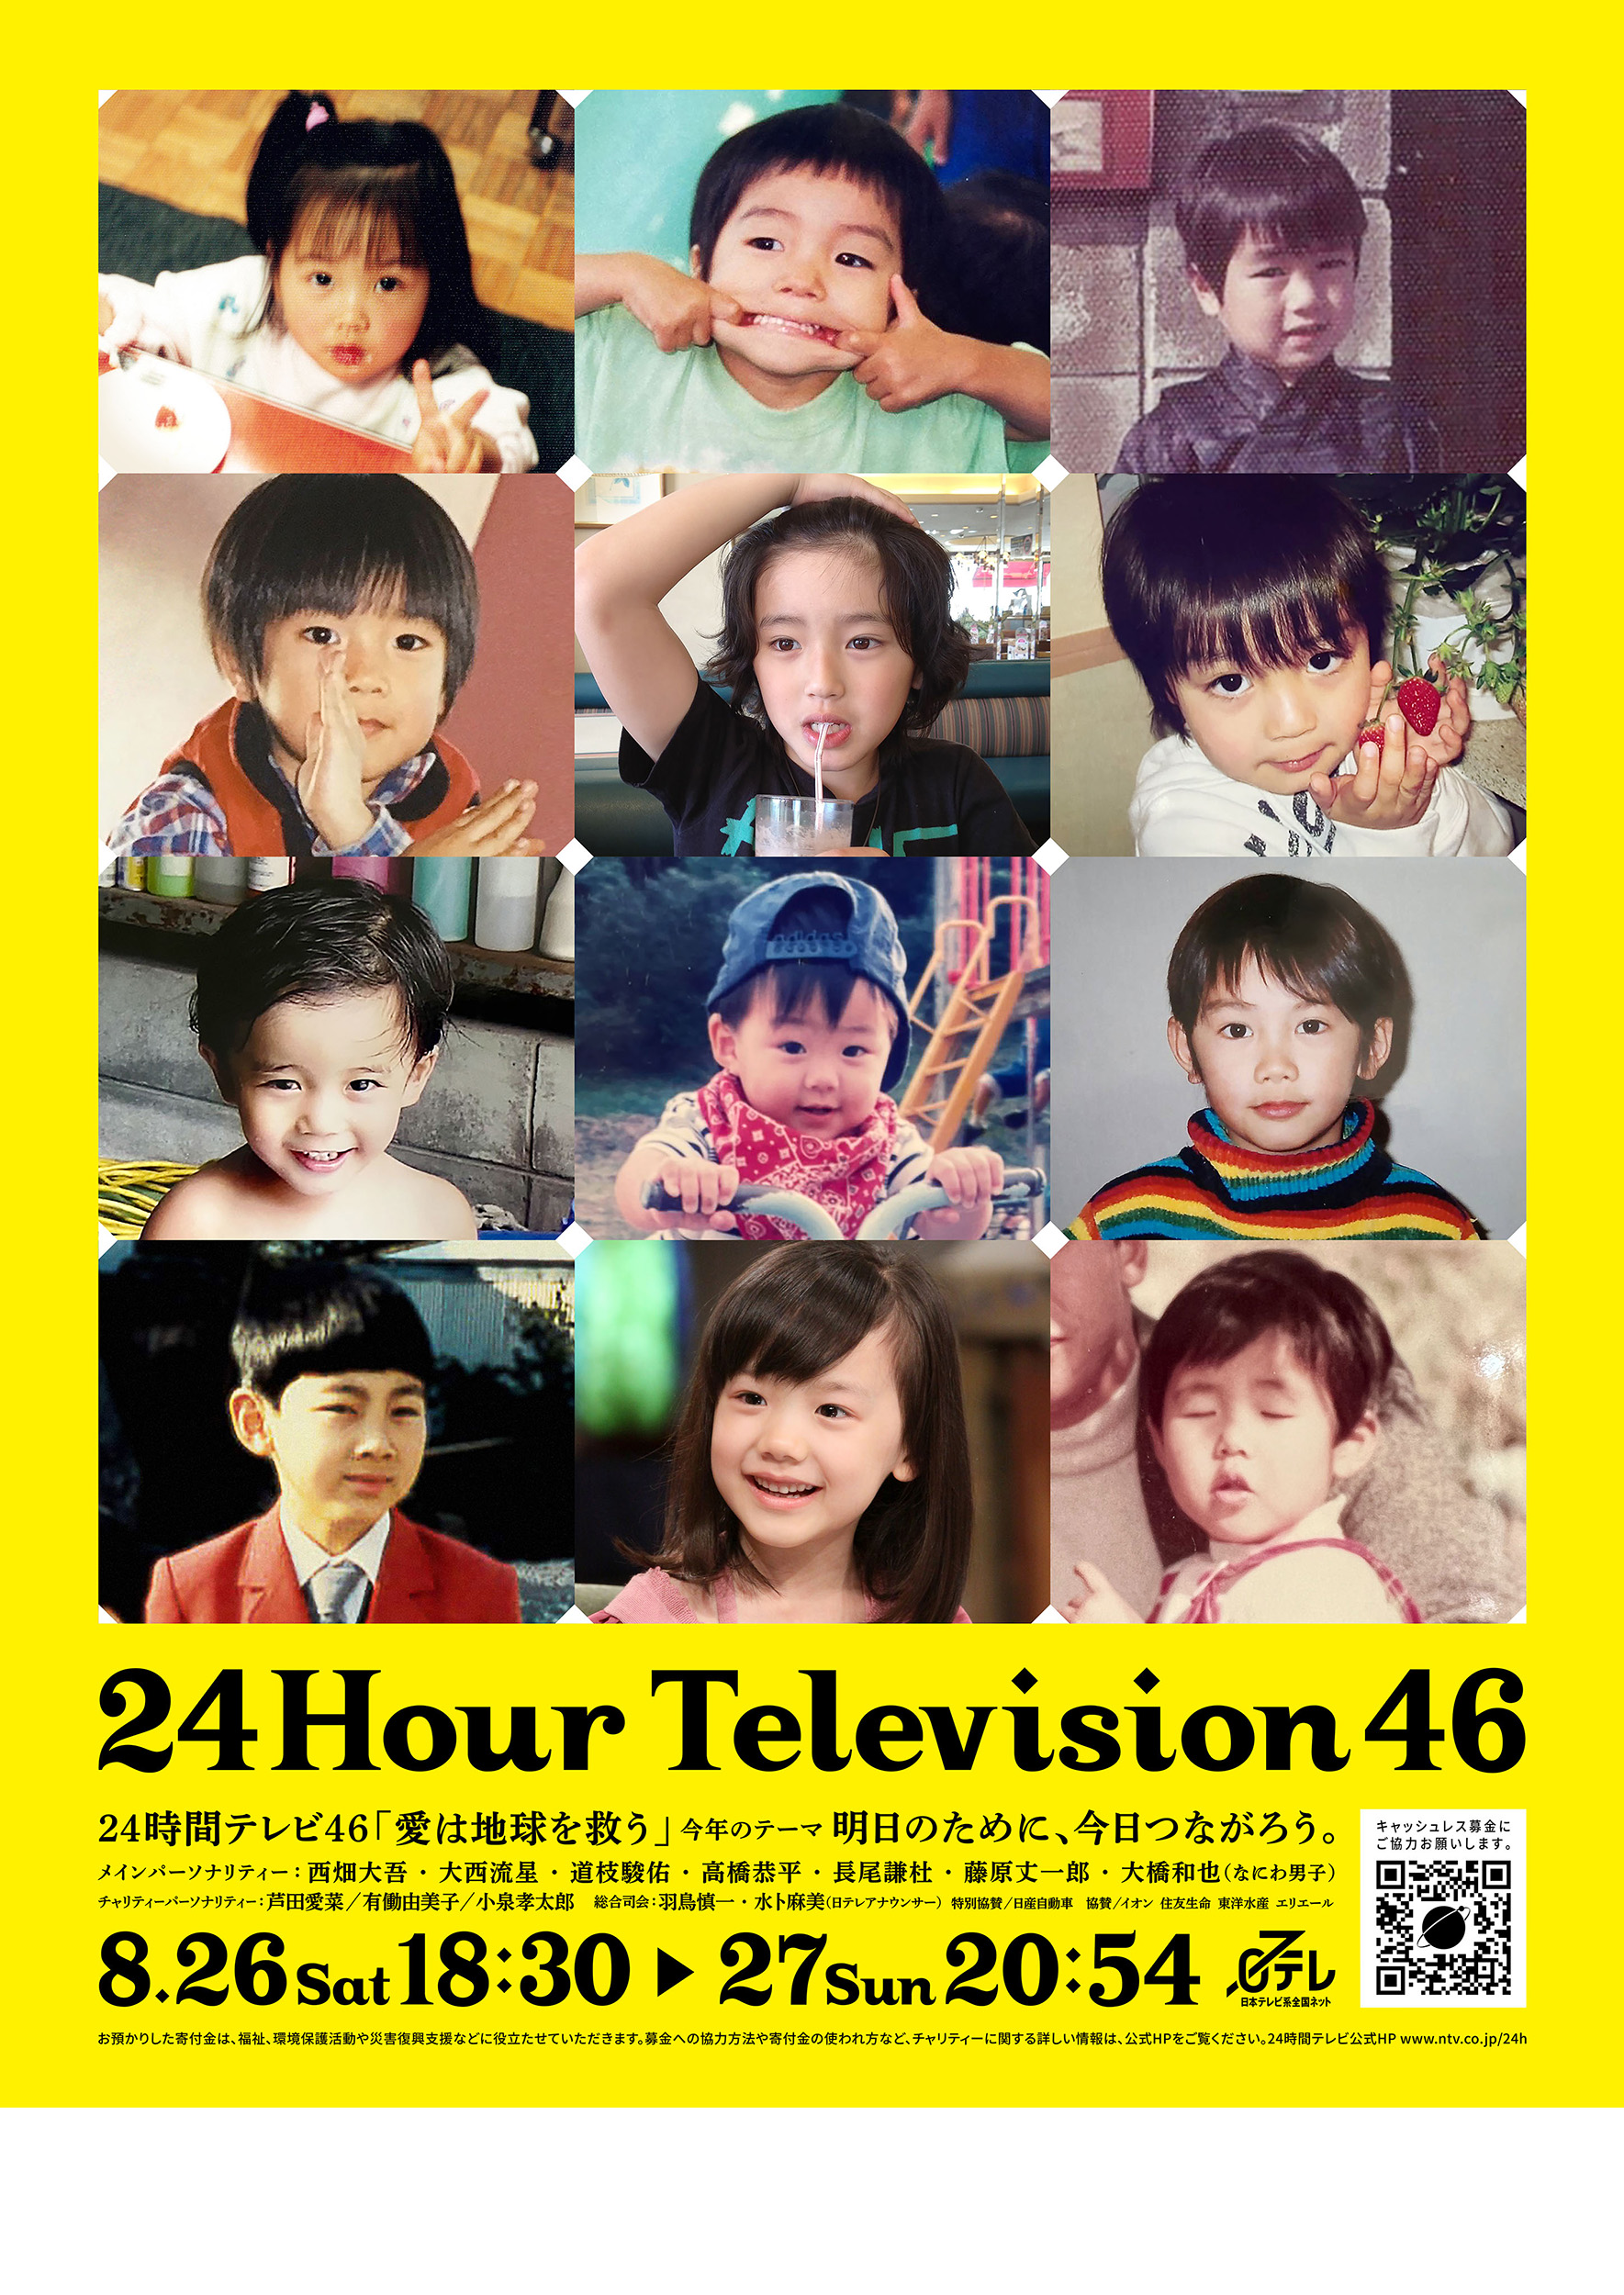 なにわ男子がメインパーソナリティーを務める日テレ「24時間テレビ46」のポスタービジュアルお披露目